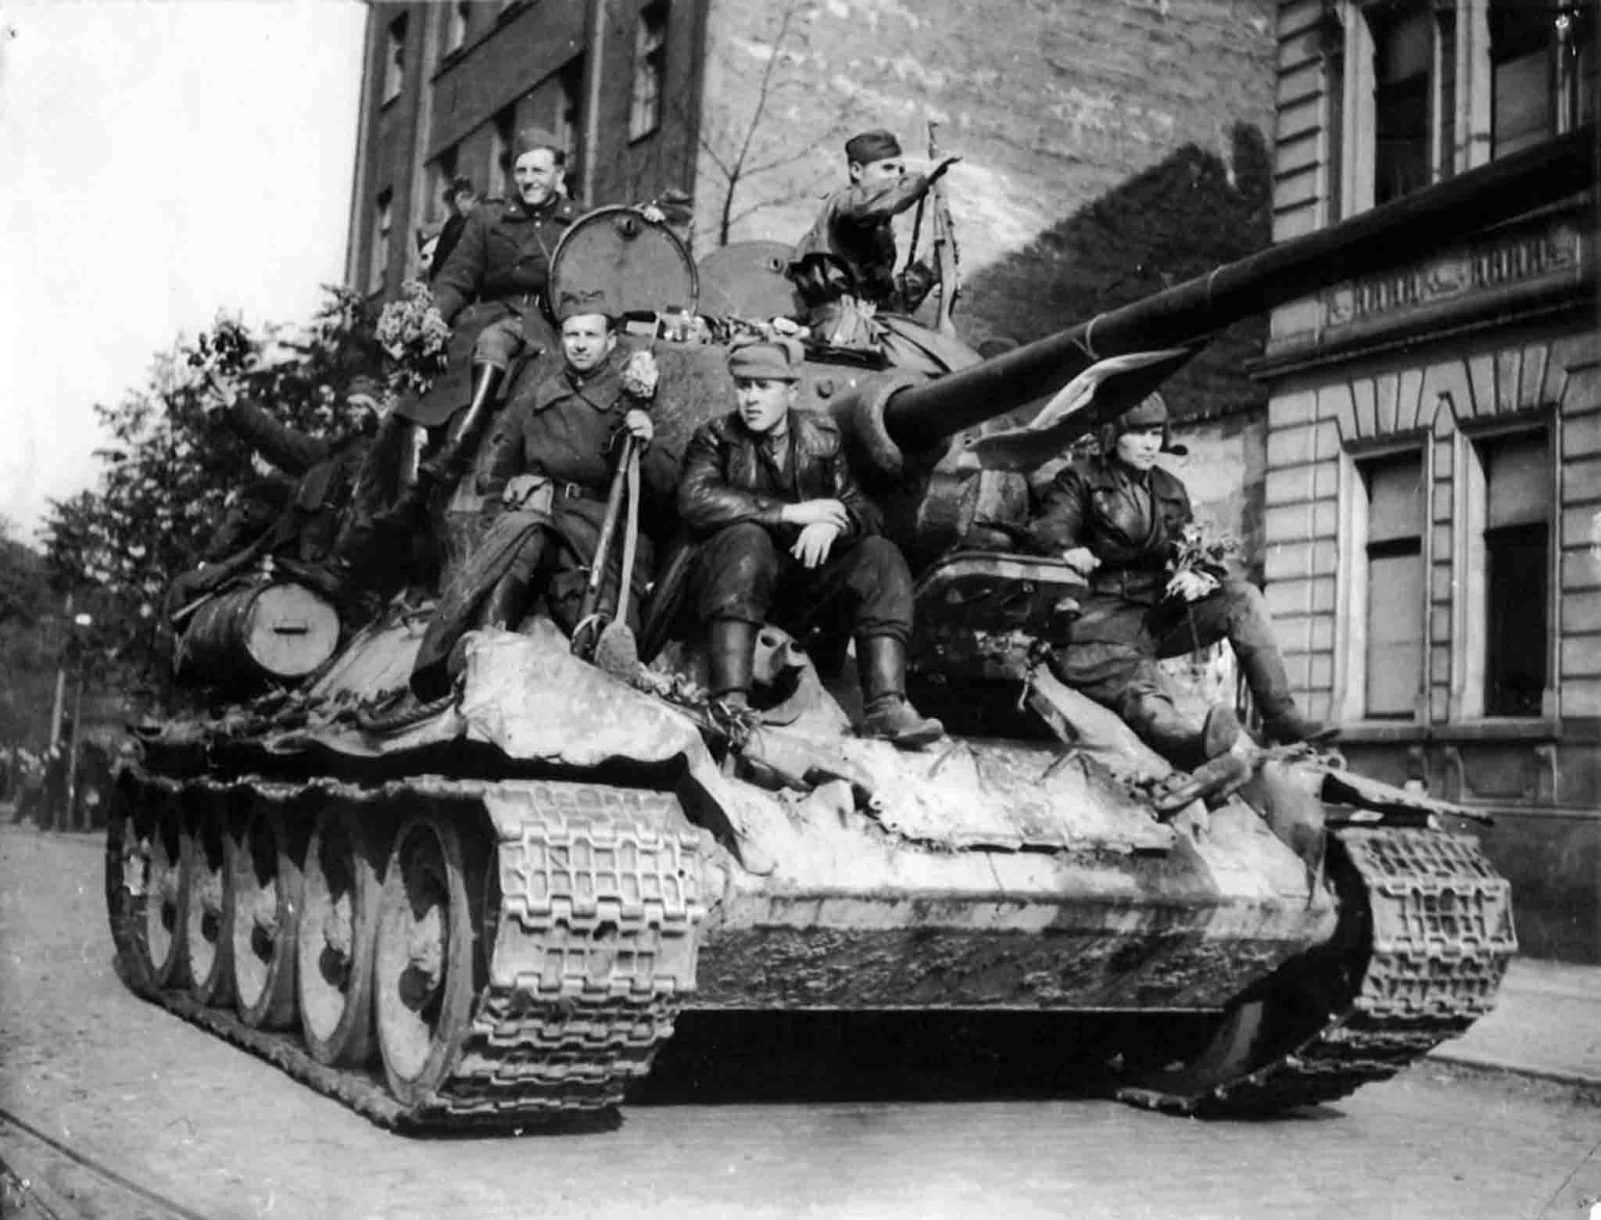 soviet troops in Czechoslovakia